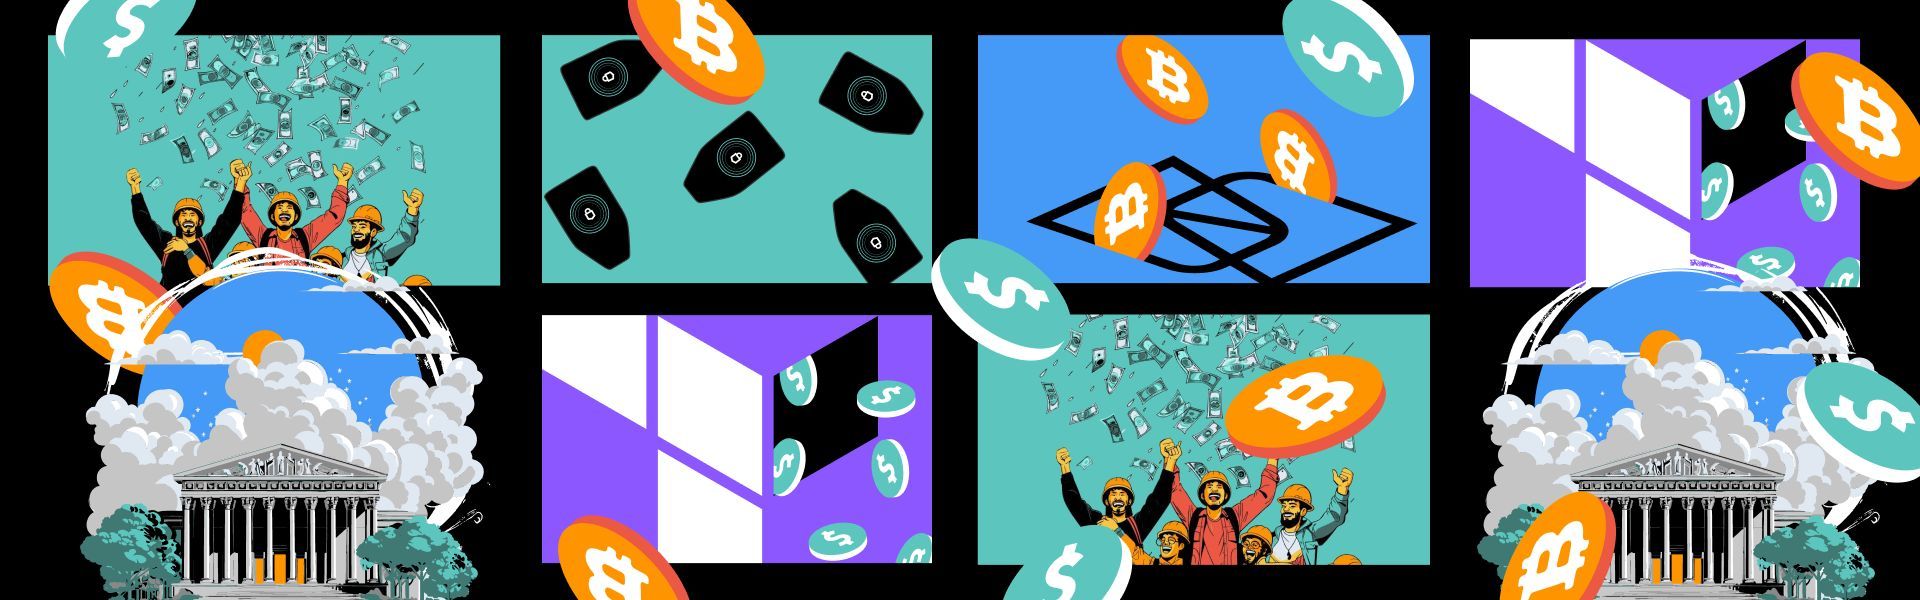 Highlights der Woche: die wichtigsten Ereignisse in der Welt von Bitcoin